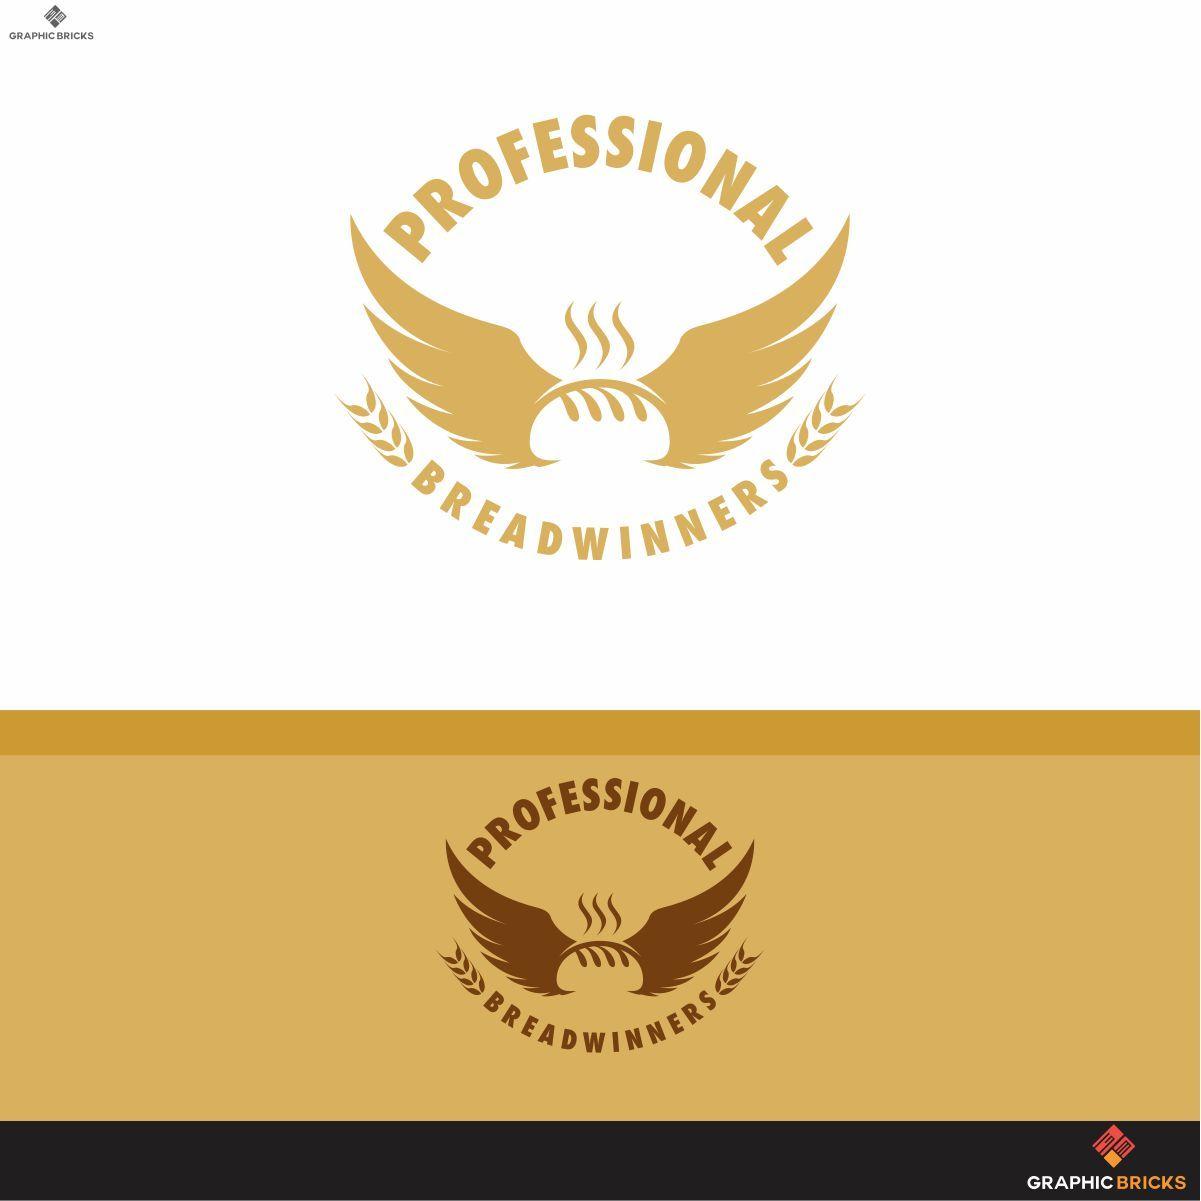 Breadwinners Logo - Modern, Elegant, Entrepreneur Logo Design for Professional